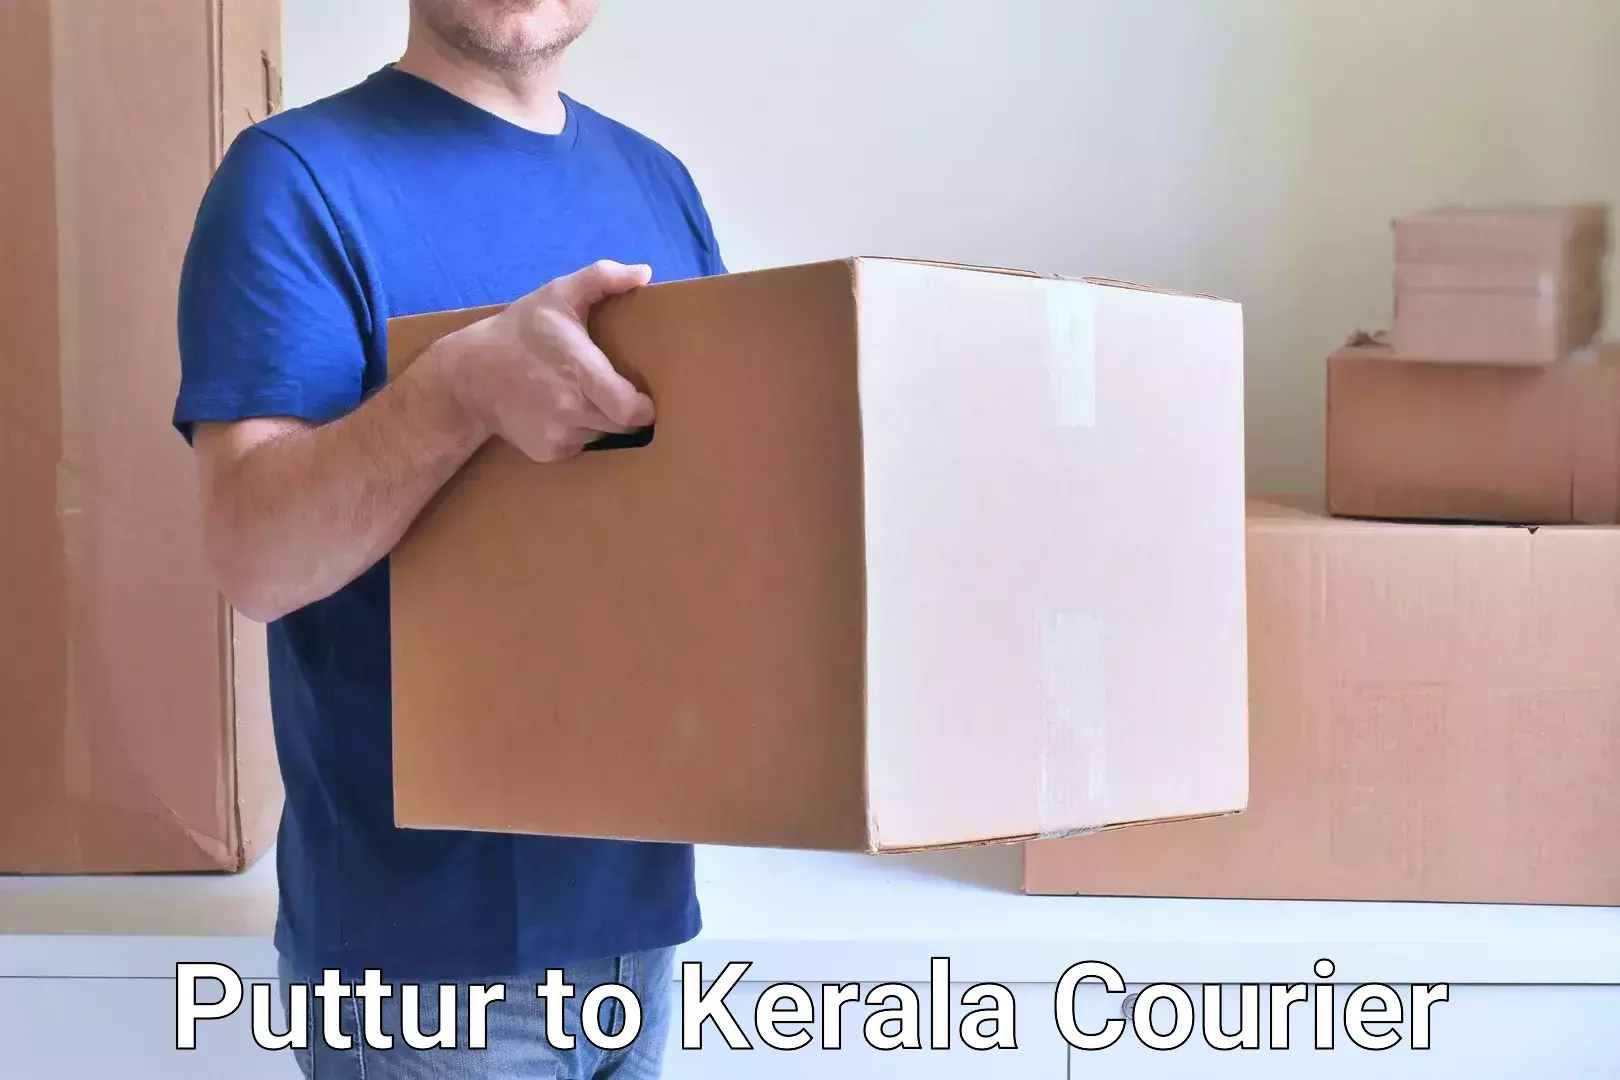 Customer-focused courier Puttur to Kozhencherry